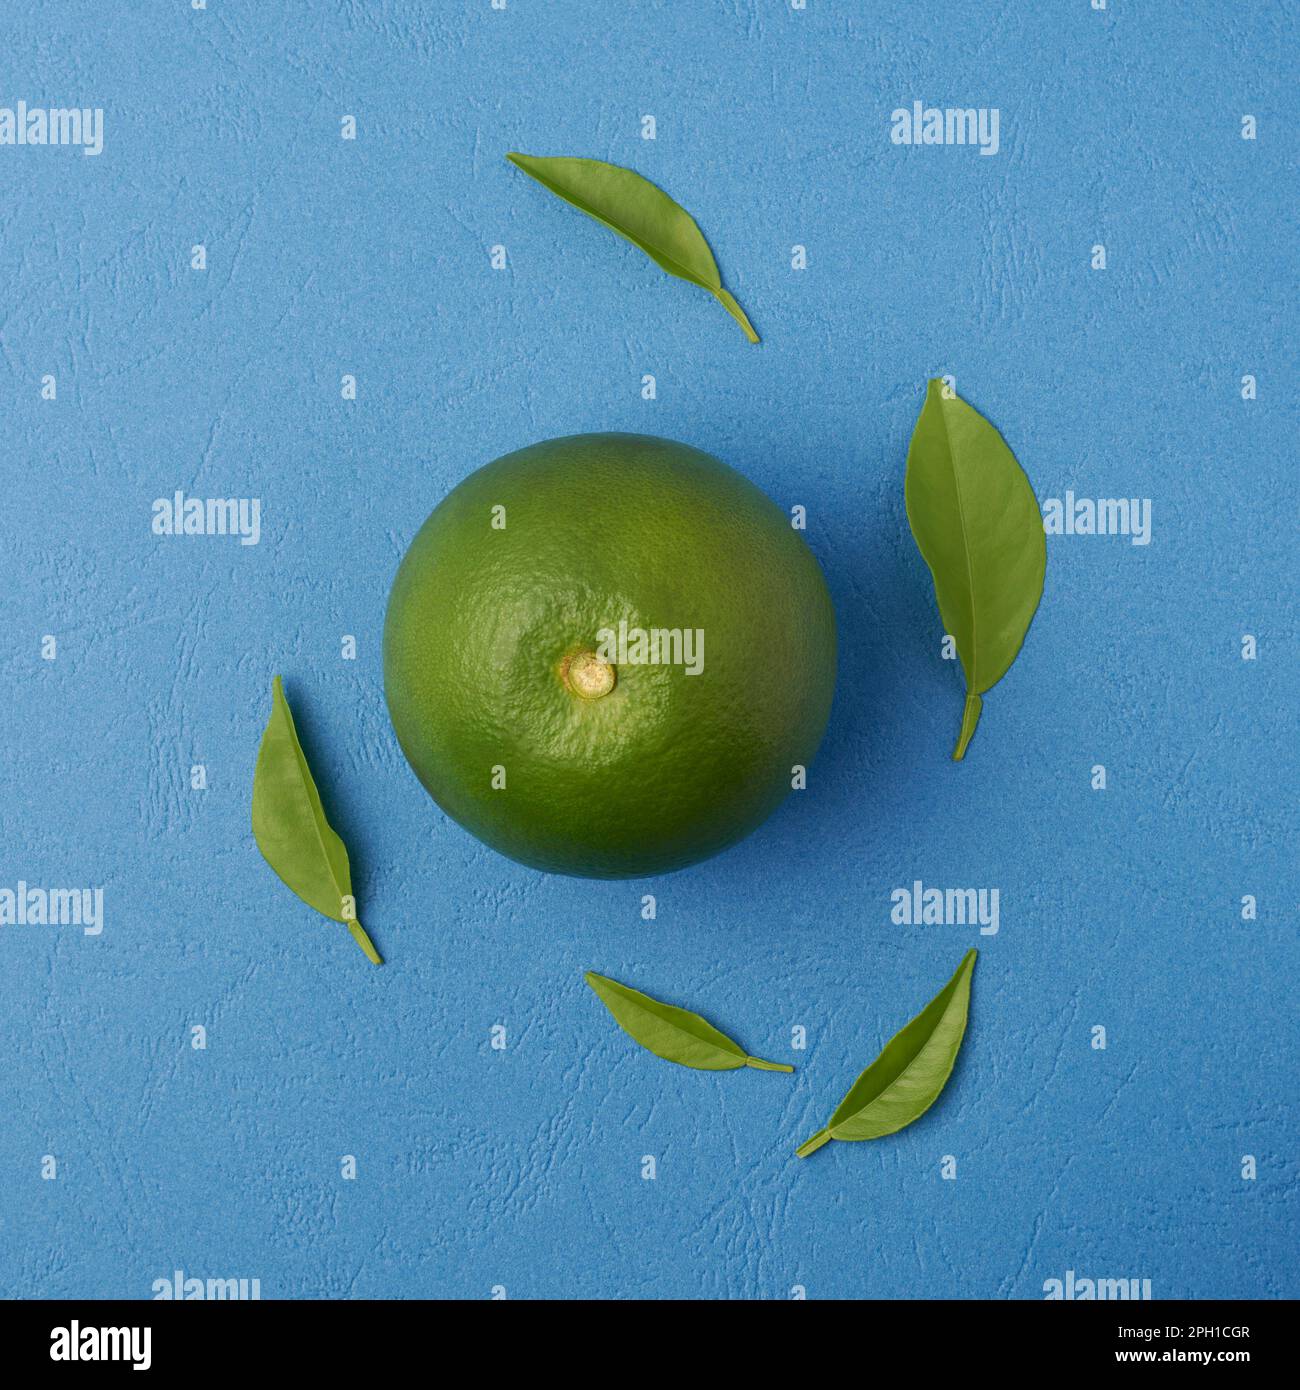 frutta verde buccia arancio su sfondo blu testurizzato con le sue foglie, alto in vitamina c, antiossidante e altre sostanze nutritive, preso direttamente dall'alto Foto Stock